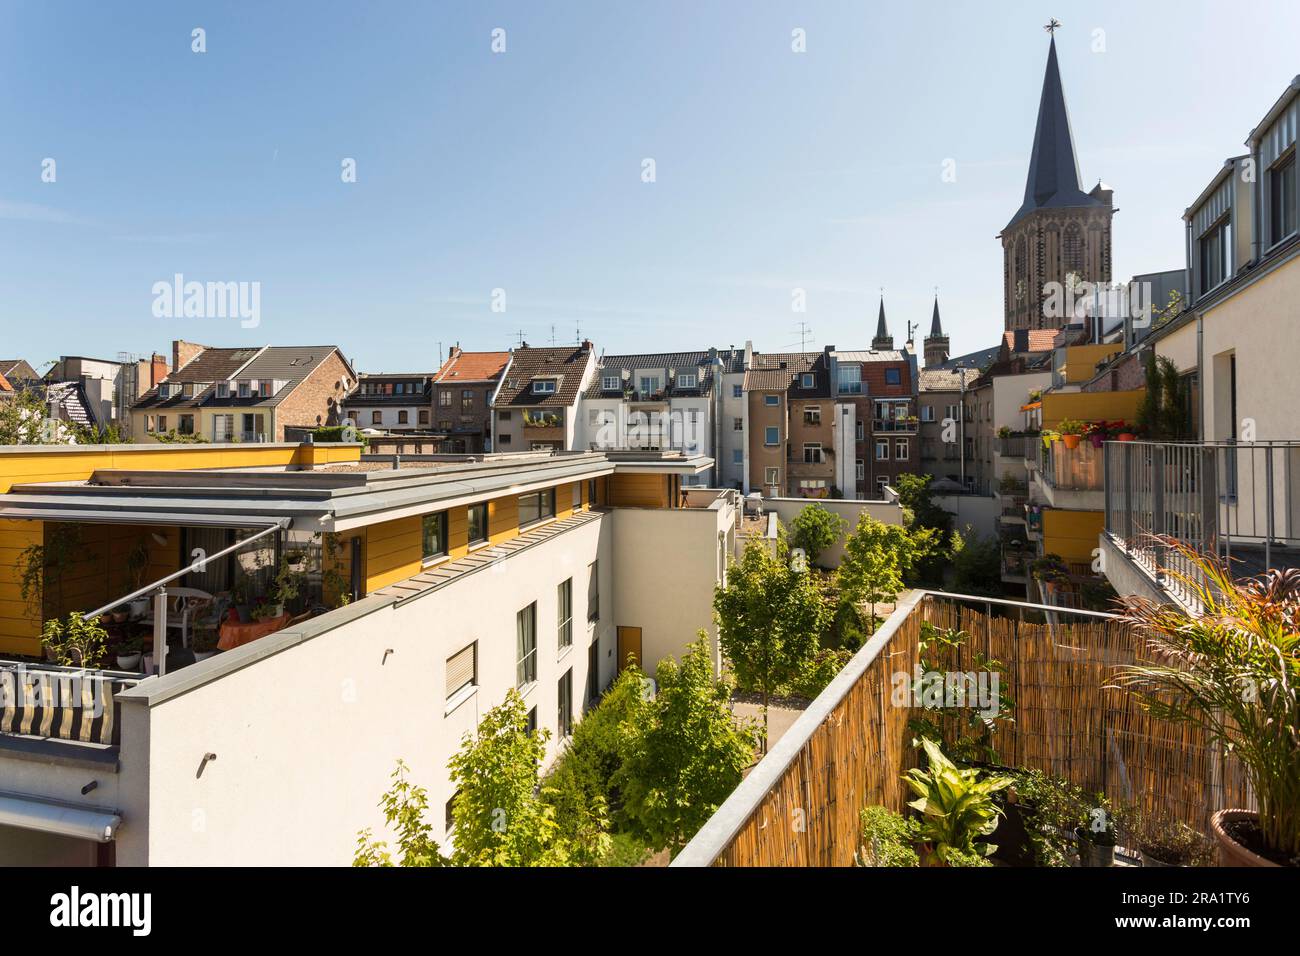 Blick auf eine zentrale Stadtgegend in köln mit Häusern Stockfoto